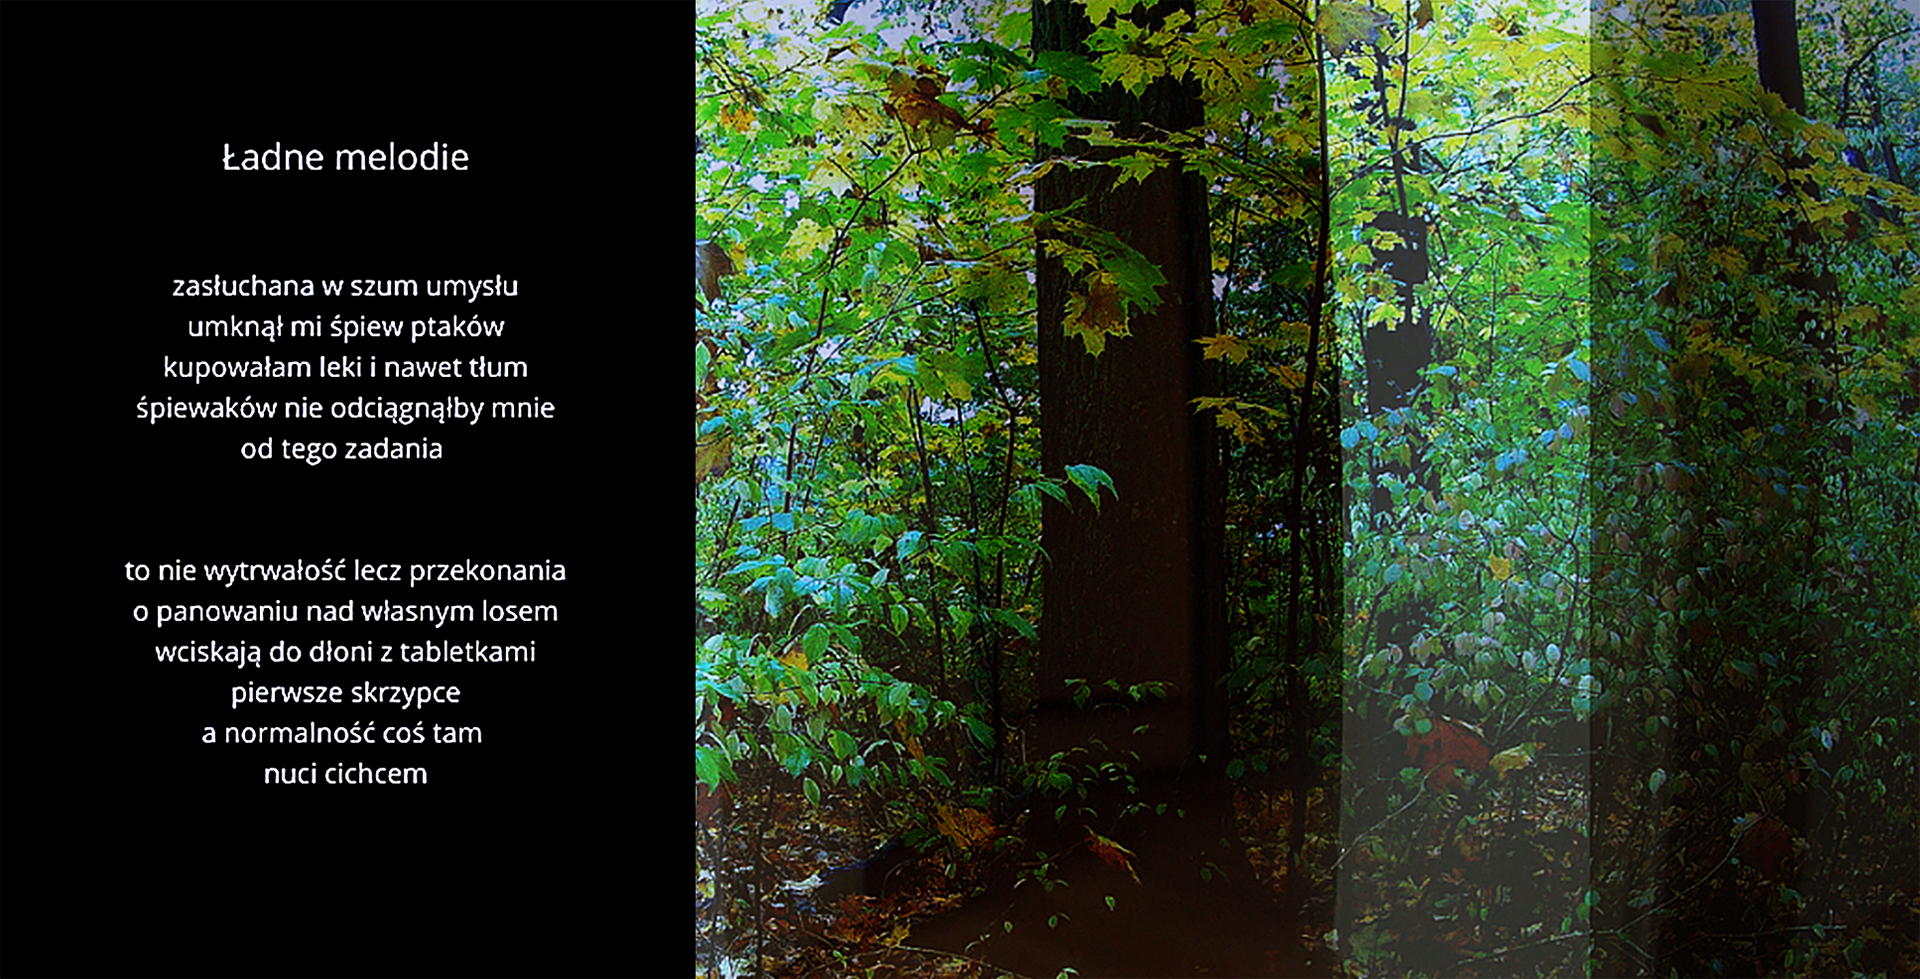 Kolorowa, przetworzona fotografia cyfrowa lasu, skonfrontowana z tekstem  autorskiego wiersza. 